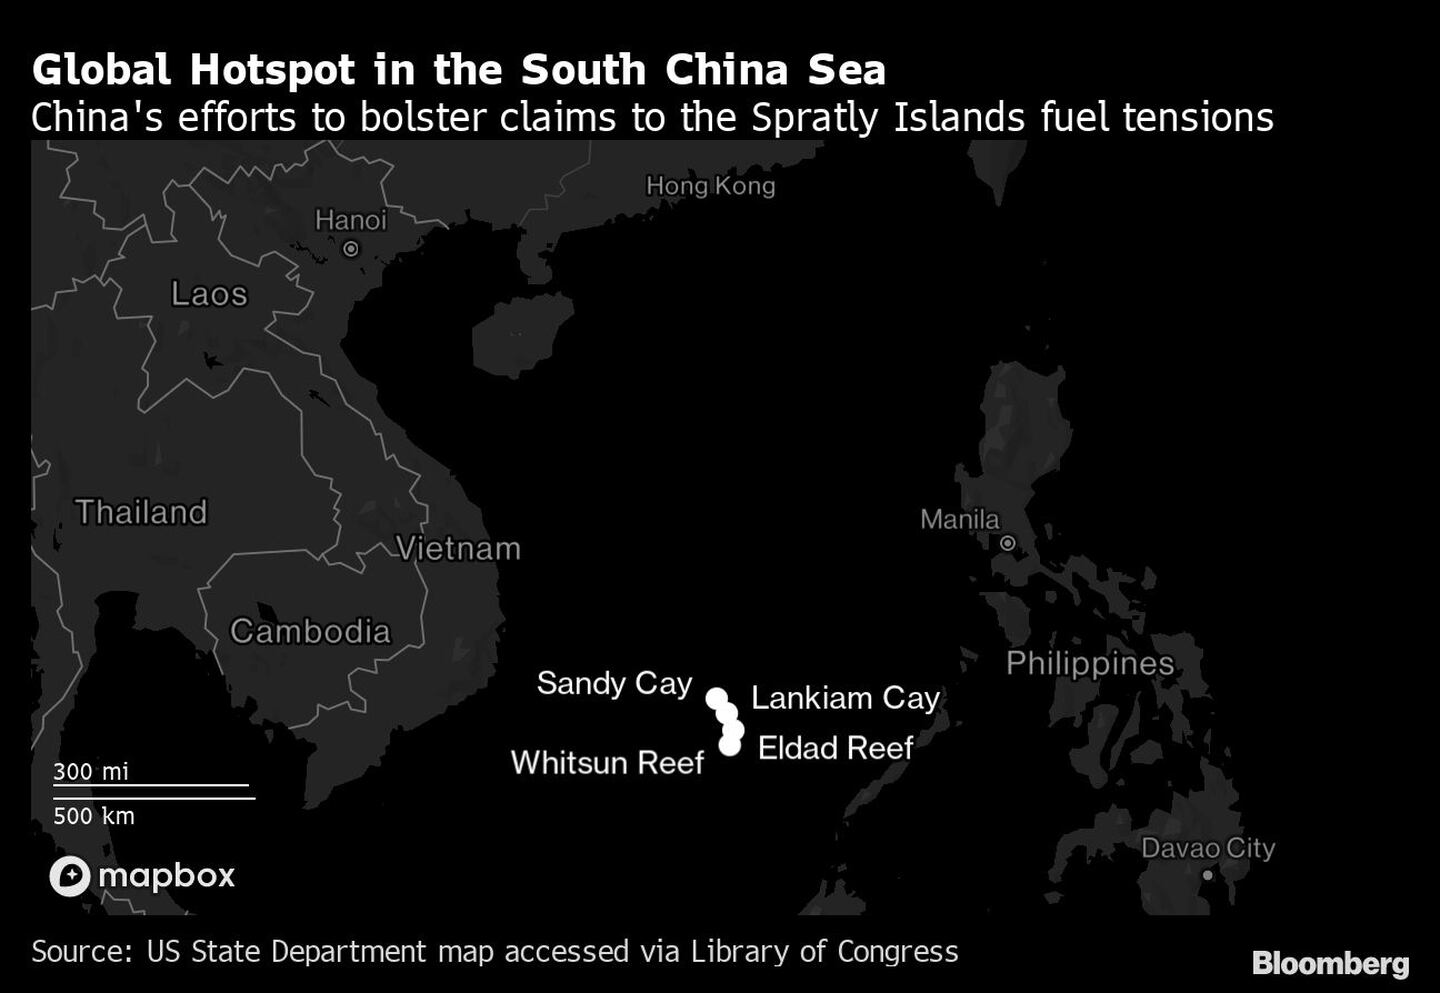 Los esfuerzos de China por reforzar sus reivindicaciones sobre las islas Spratly avivan las tensiones.dfd